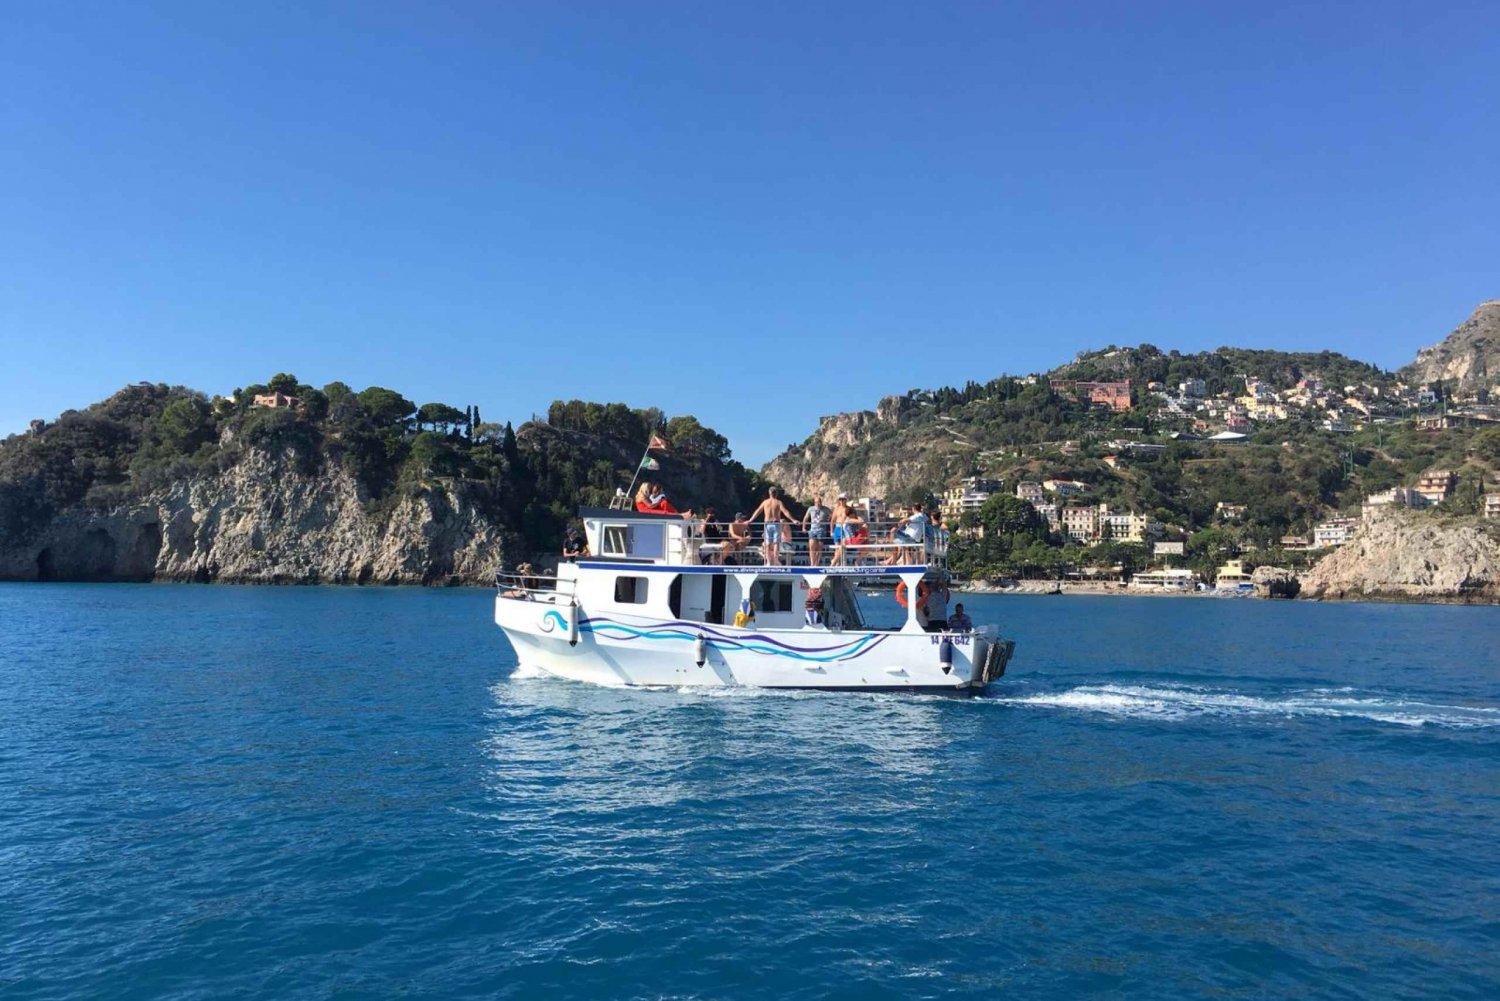 Giardini Naxos: Passeio de barco Isola Bella com mergulho com snorkel